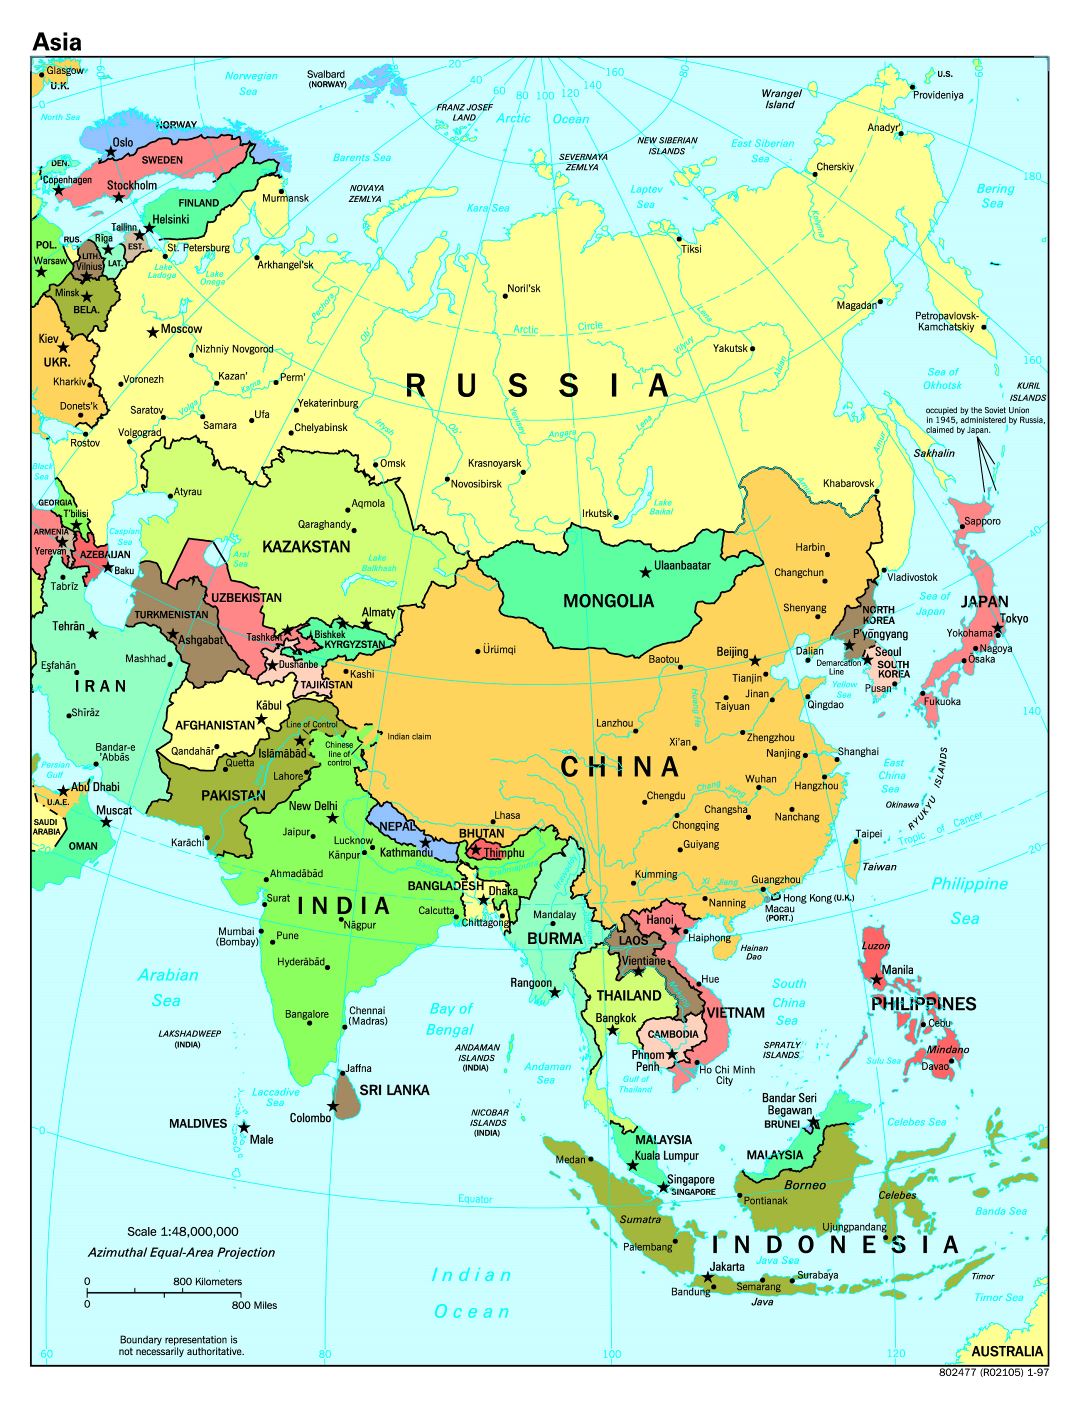 Mapa político a gran escala de Asia - 1997